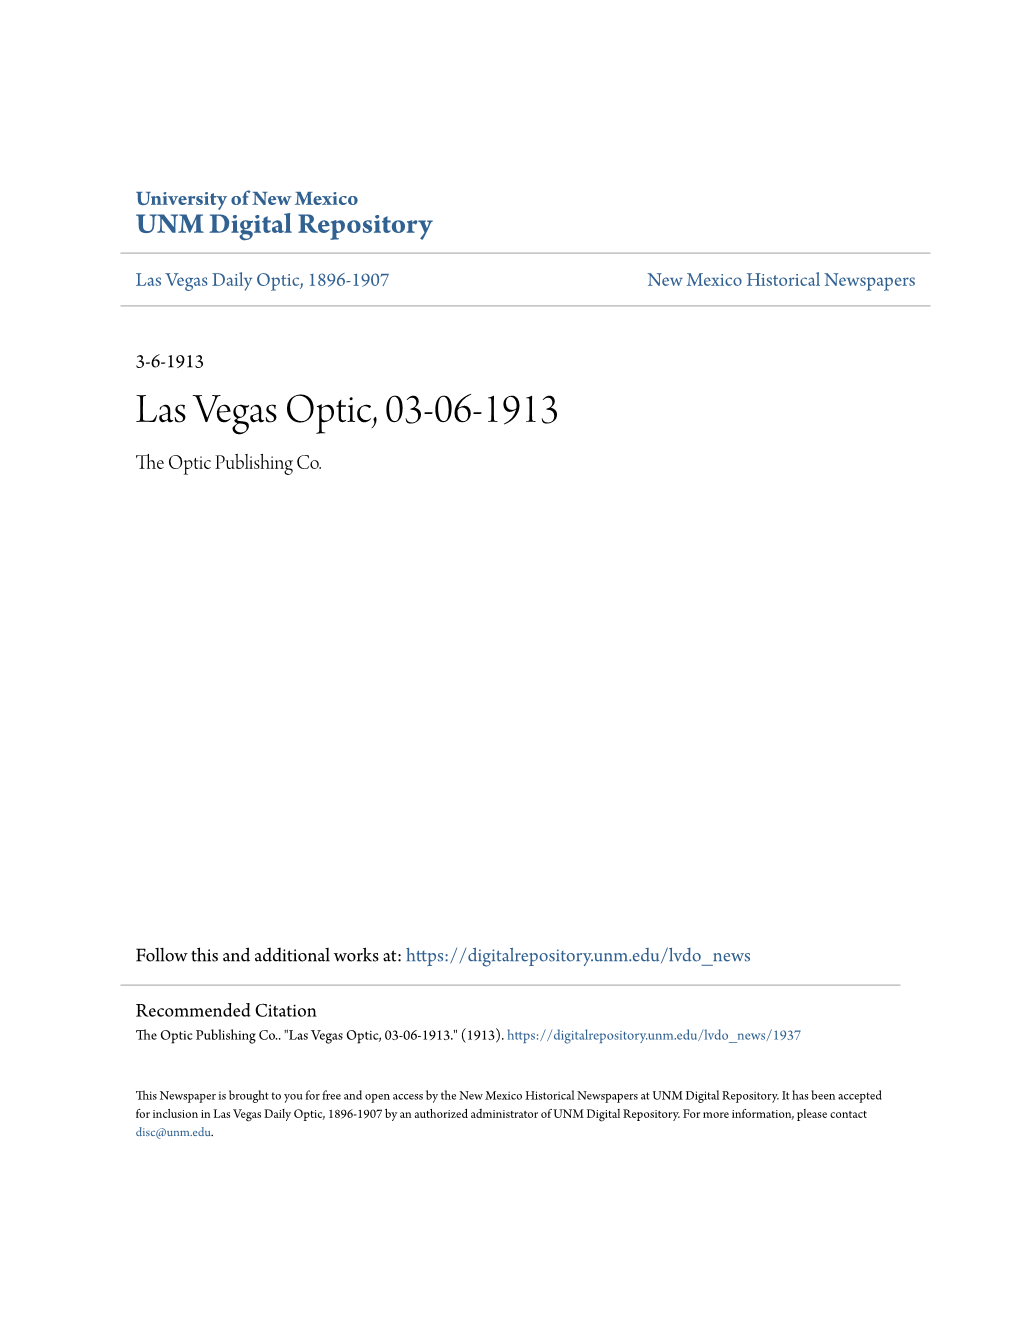 Las Vegas Optic, 03-06-1913 the Optic Publishing Co